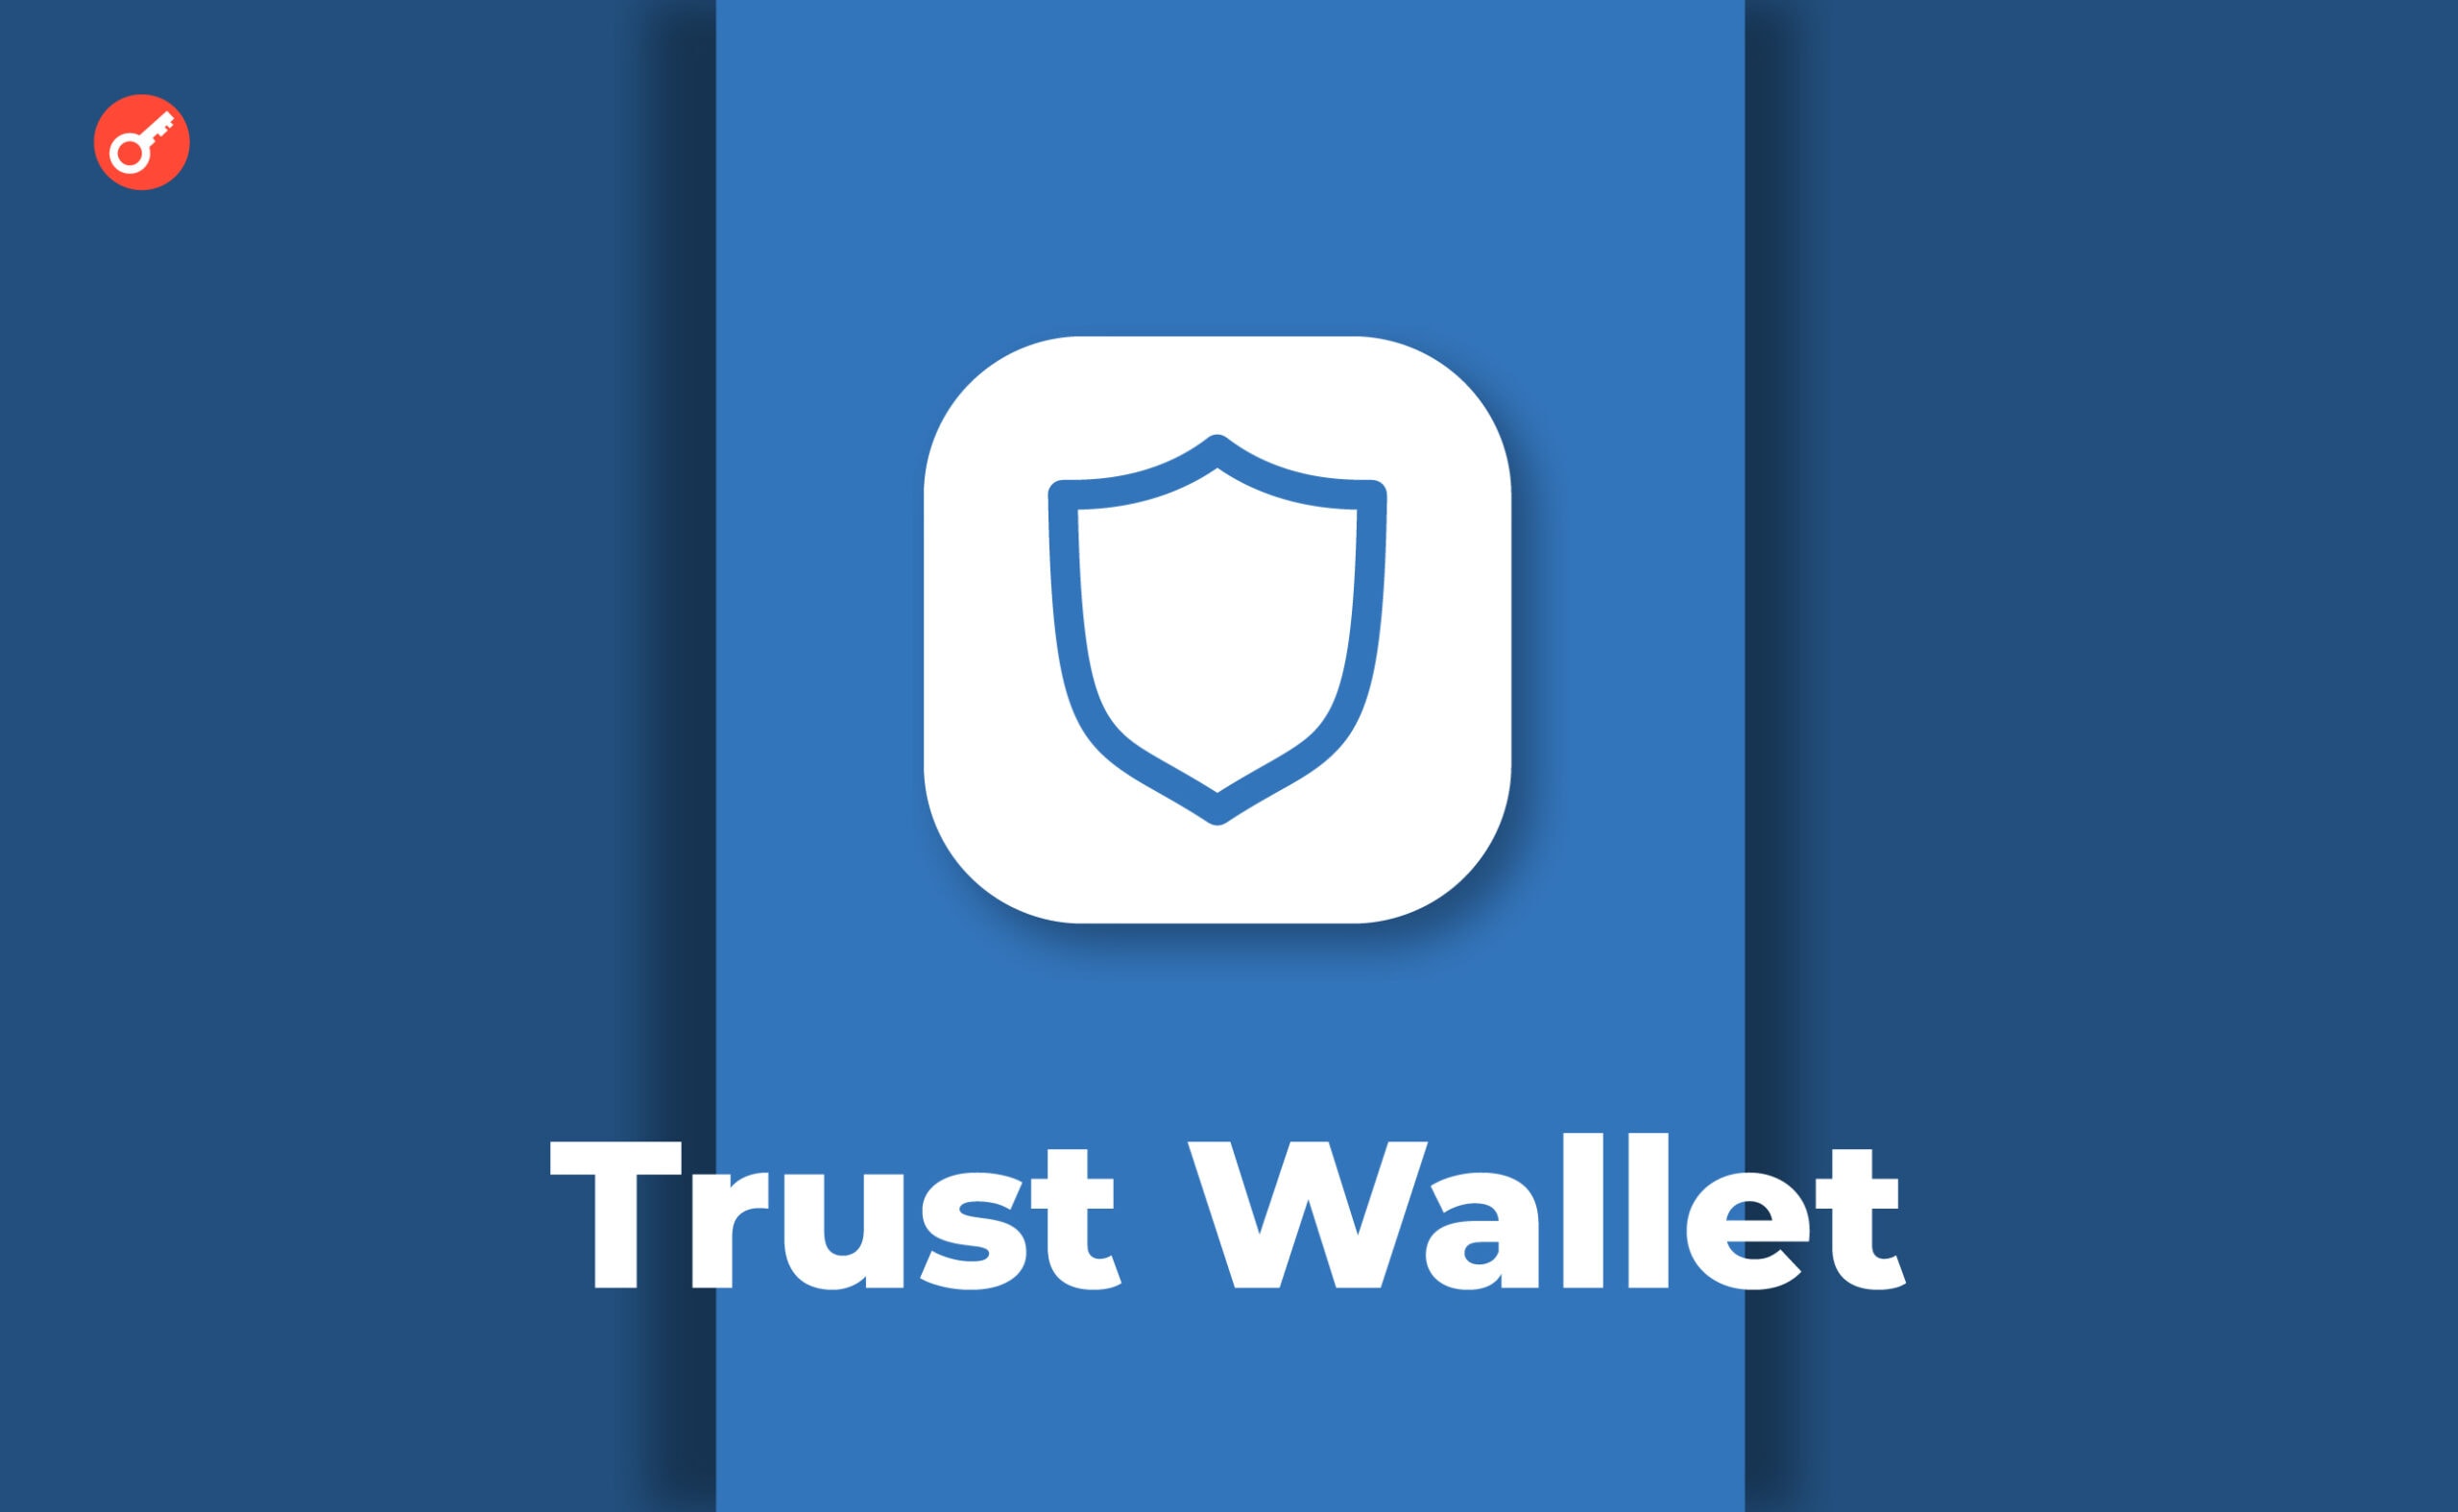 Кошелек Trust Wallet раскрыл детали уязвимости WebAssembly. Заглавный коллаж новости.